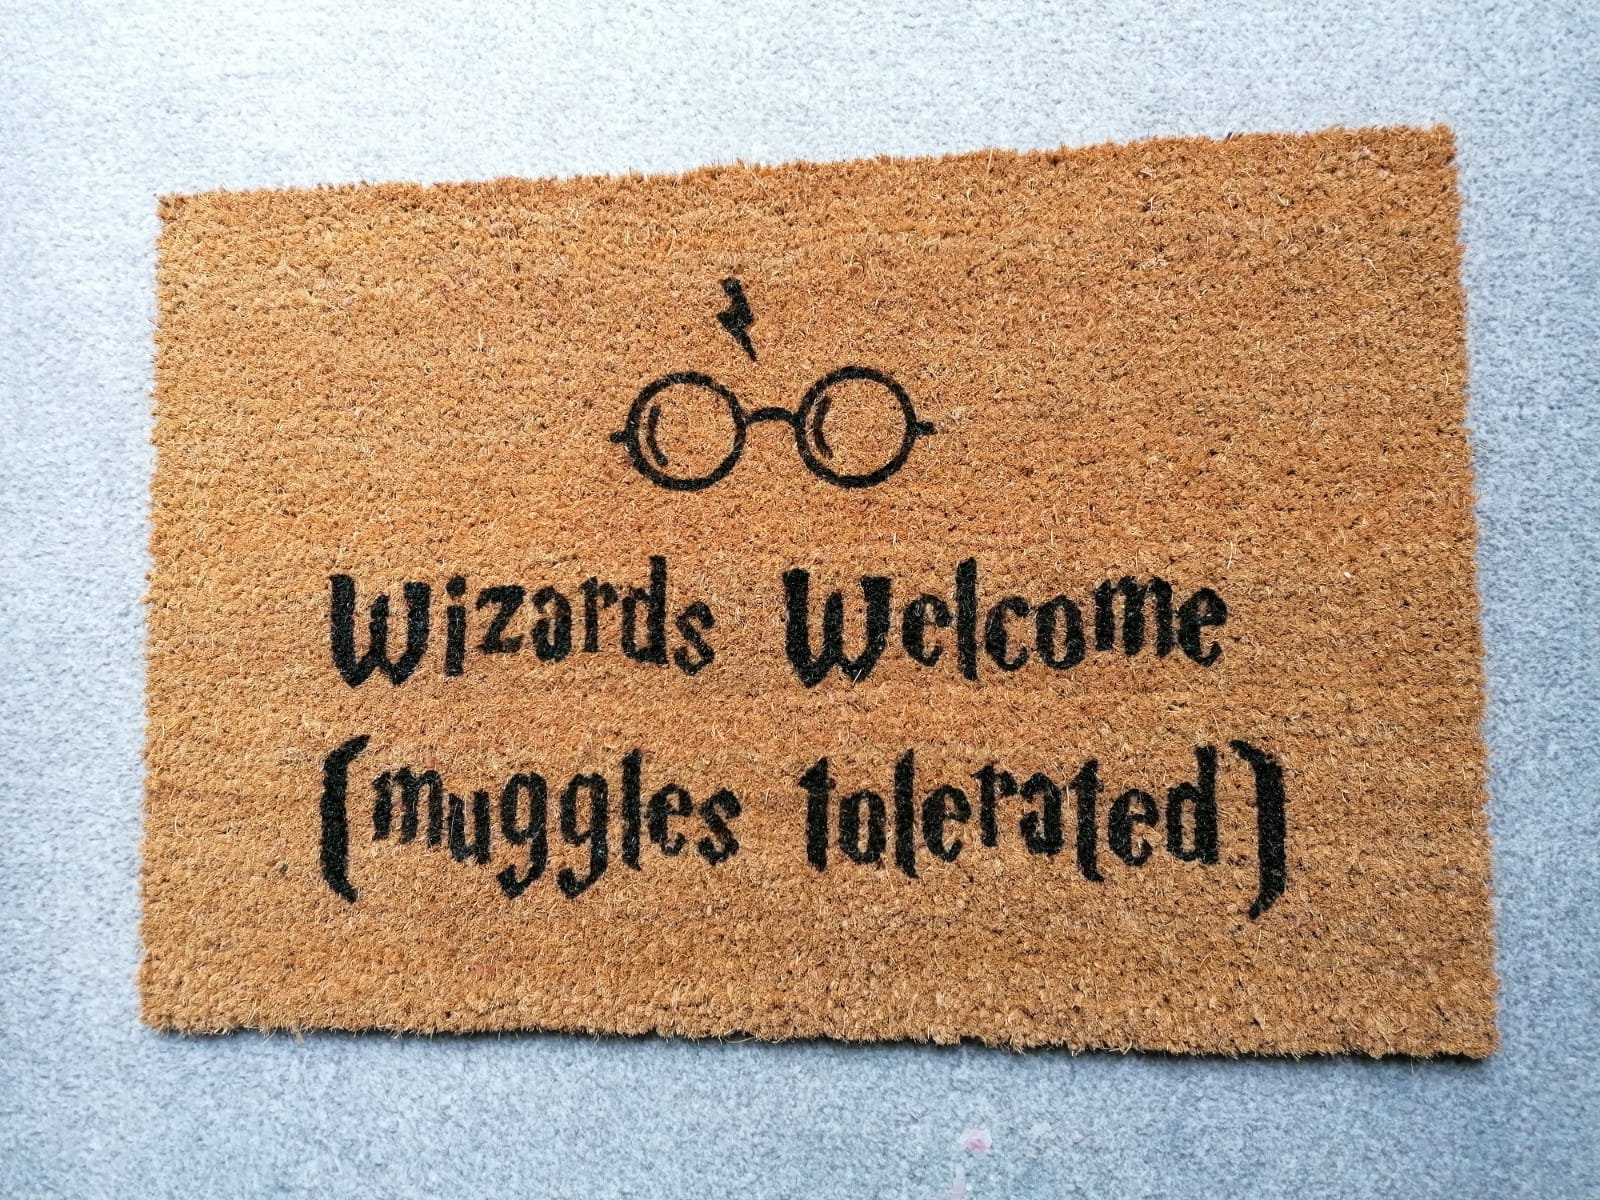 Felpudo de Harry Potter / Magos bienvenidos muggles tolerados / Felpudo /  Felpudo personalizado / fussmatte / Felpudo personalizado